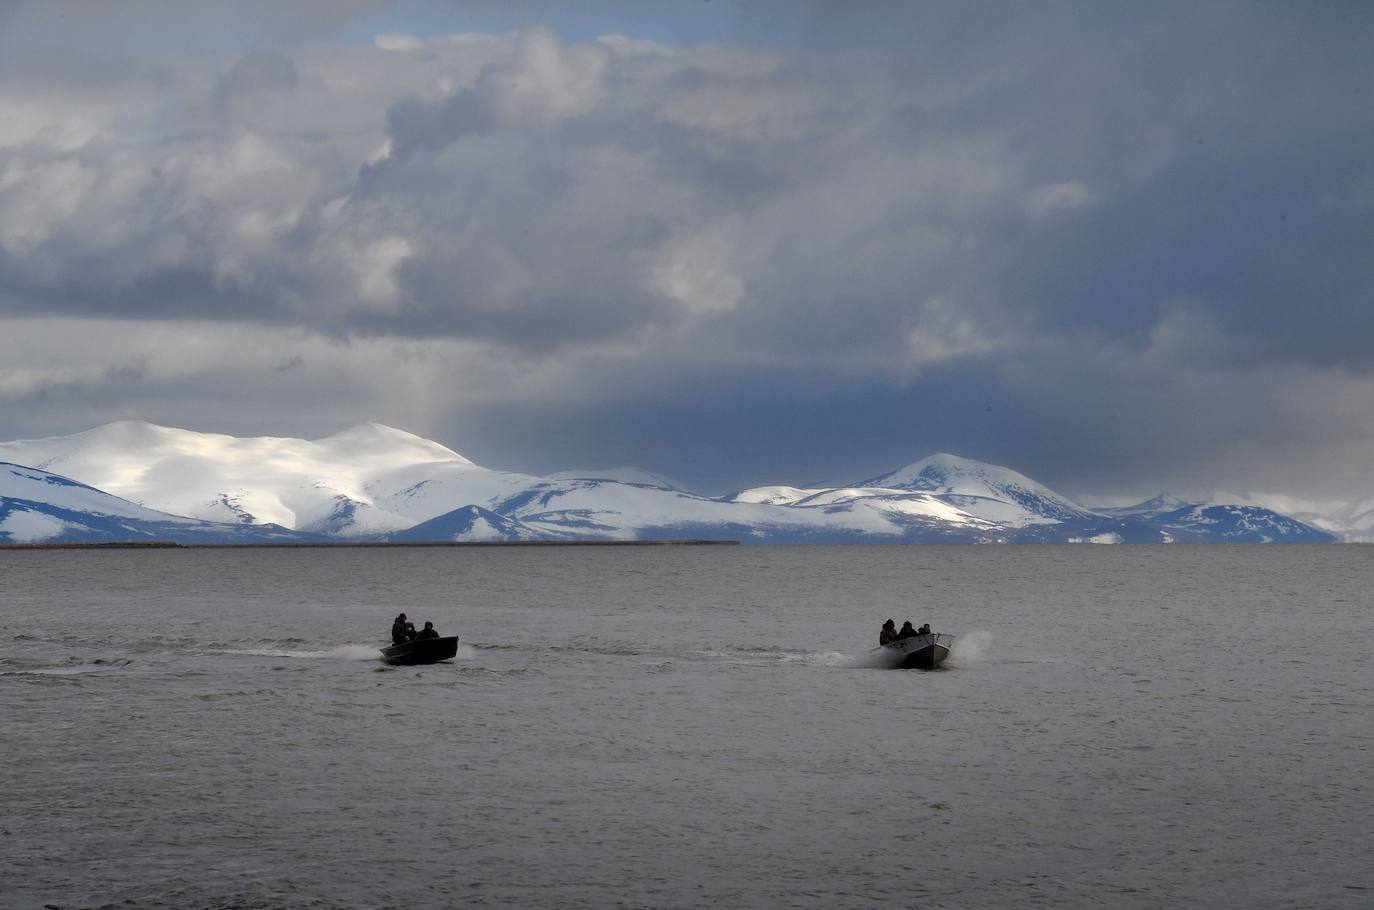 Cazadores regresan de un viaje en busca de gansos y patos cerca de la ciudad de Quinhagak en el delta del Yukón en Alaska.Según los informes de cambio climático de los científicos, Alaska se ha estado calentando dos veces más rápido que el promedio mundial